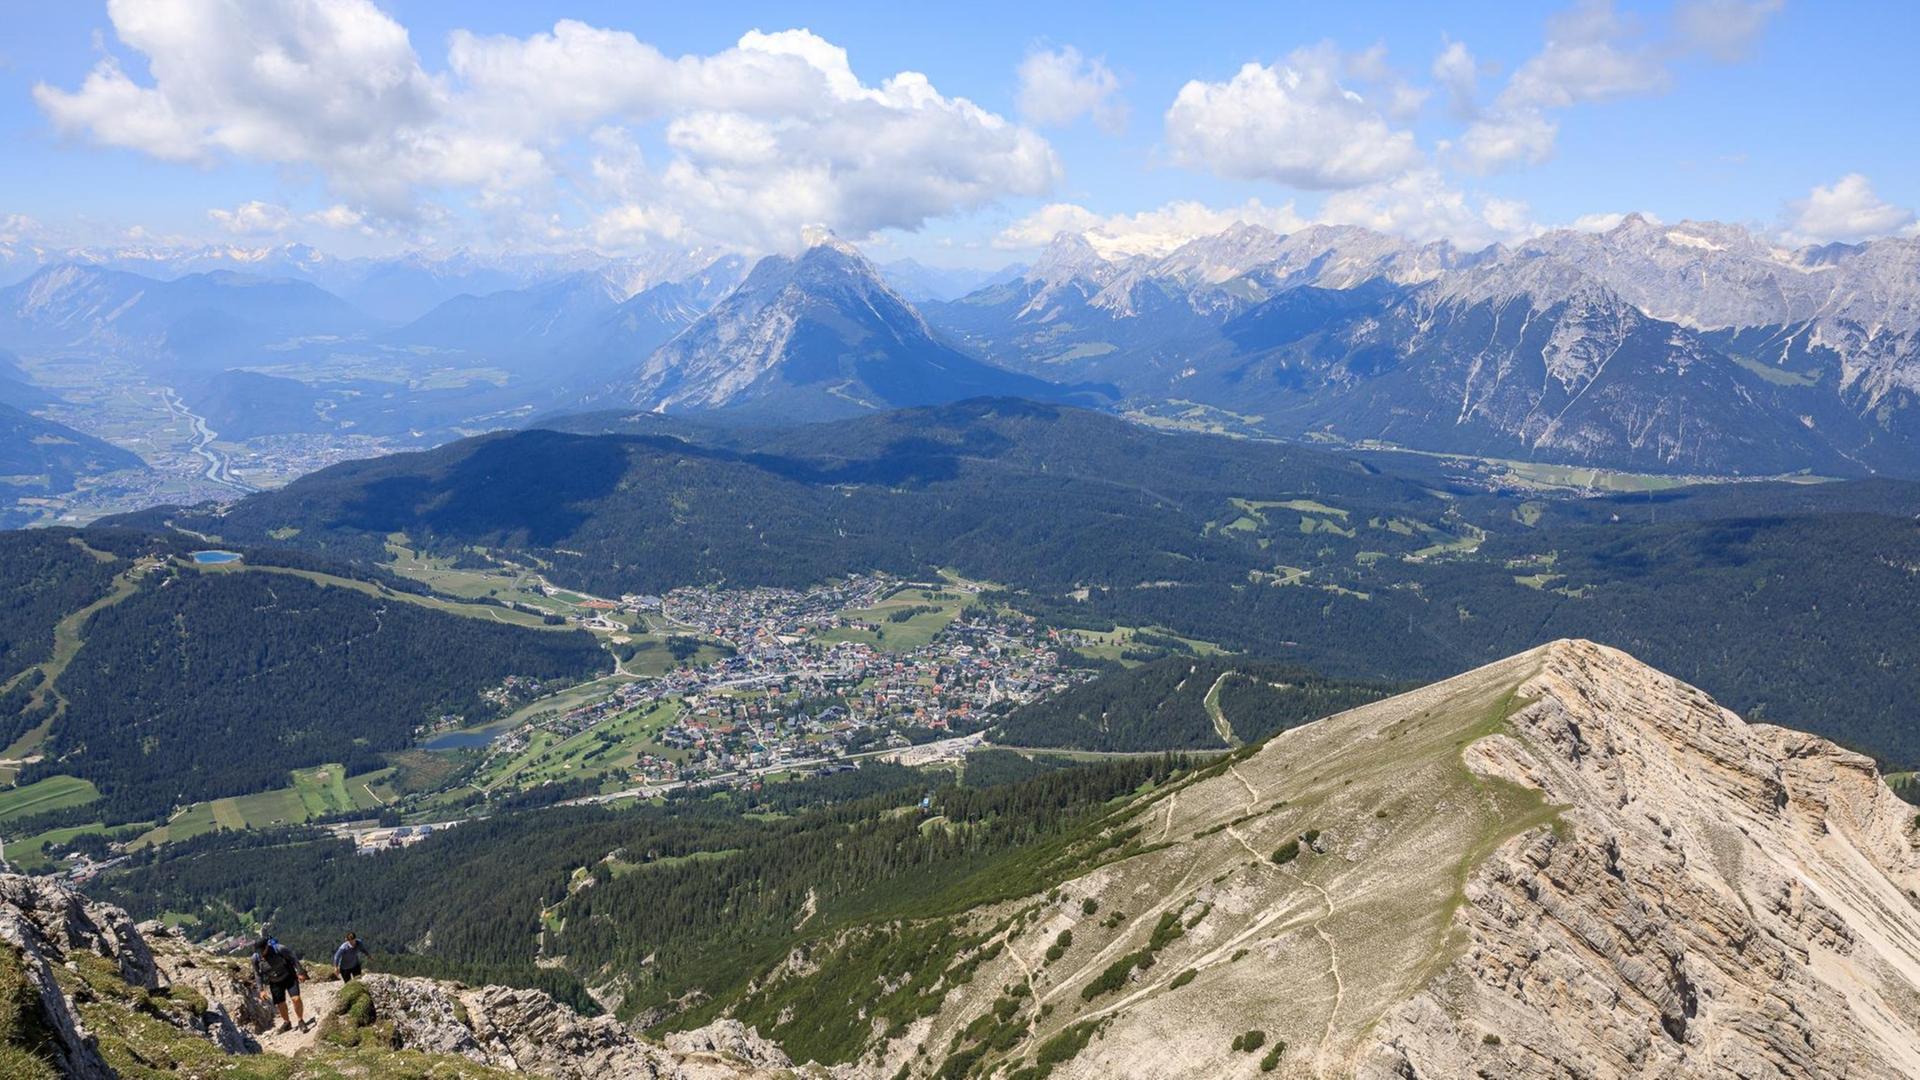 Ausblick von der Reither Spitze auf den Ort Seefeld, die dahinter liegende Hohe Munde bis zum Wettersteingebirge mit Zugspitze